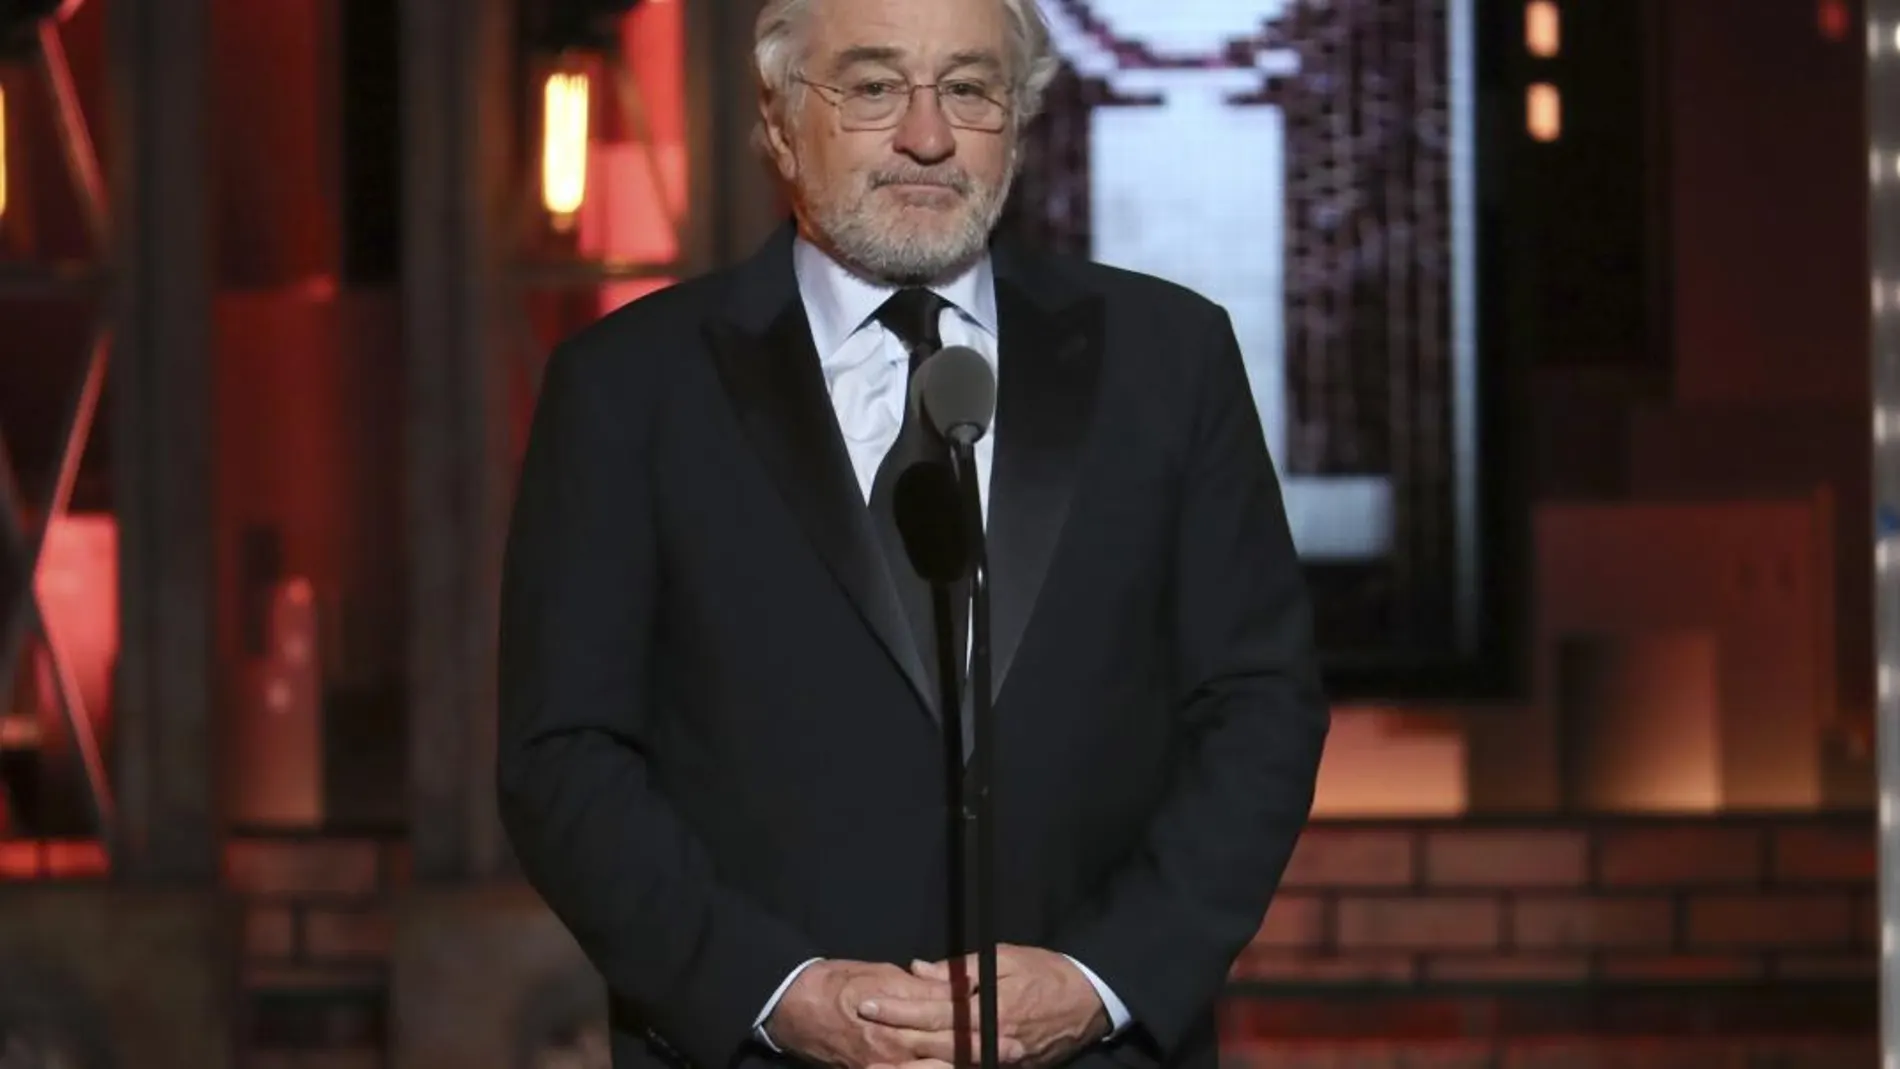 Robert De Niro, en el escenario de los premios Tony de teatro / Ap